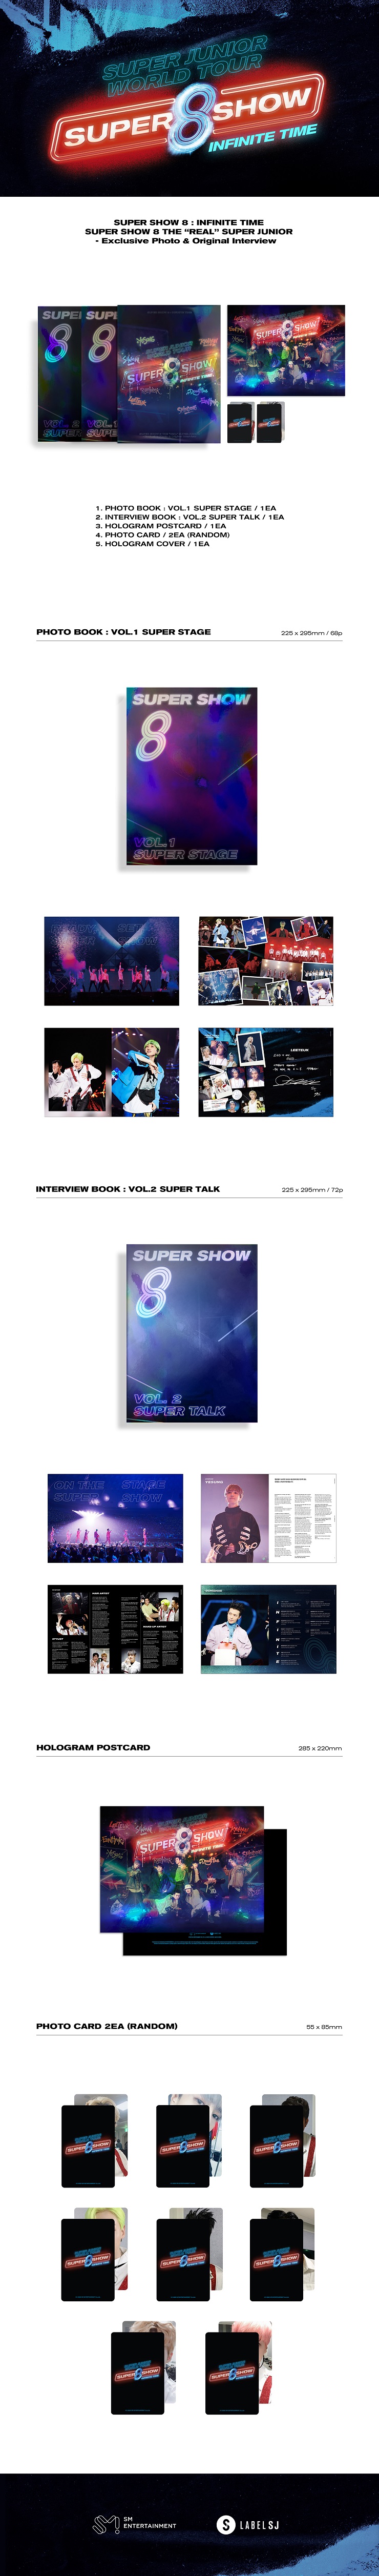 슈퍼주니어(SUPER JUNIOR) - SUPER SHOW 8 : INFINITE TIME 공연화보집